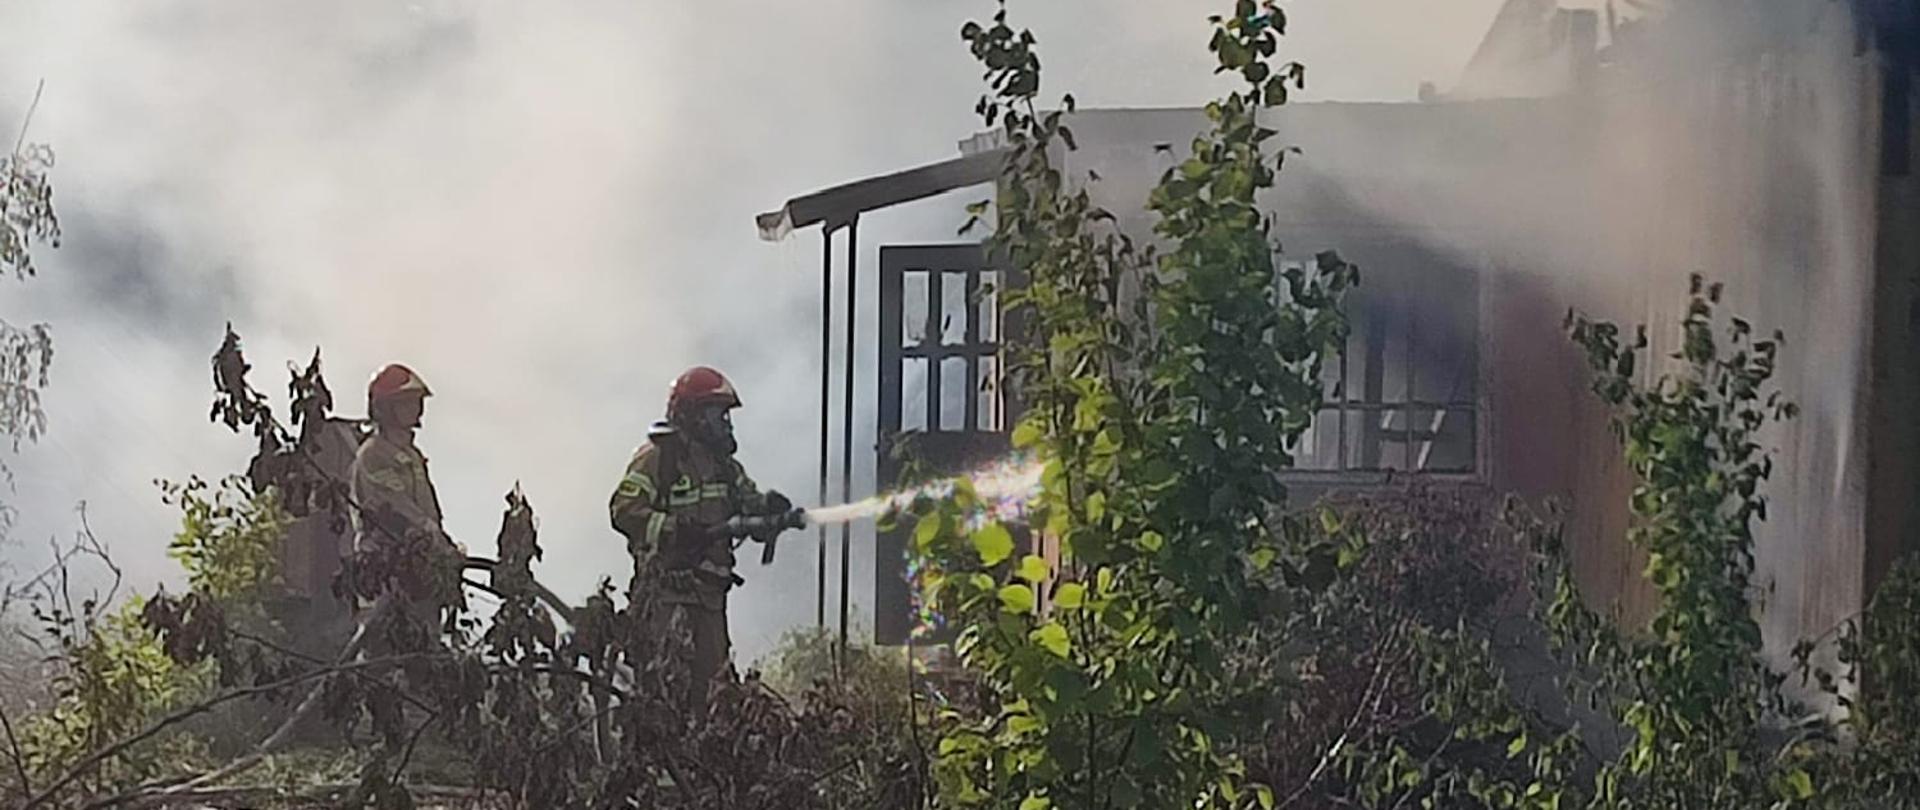 Zdjęcie przedstawia przód opuszczonego budynku mieszkalnego osnutego dymem i parą wodną, po lewej rota strażaków podająca wodę do wnętrza domu przez drzwi wejściowe.